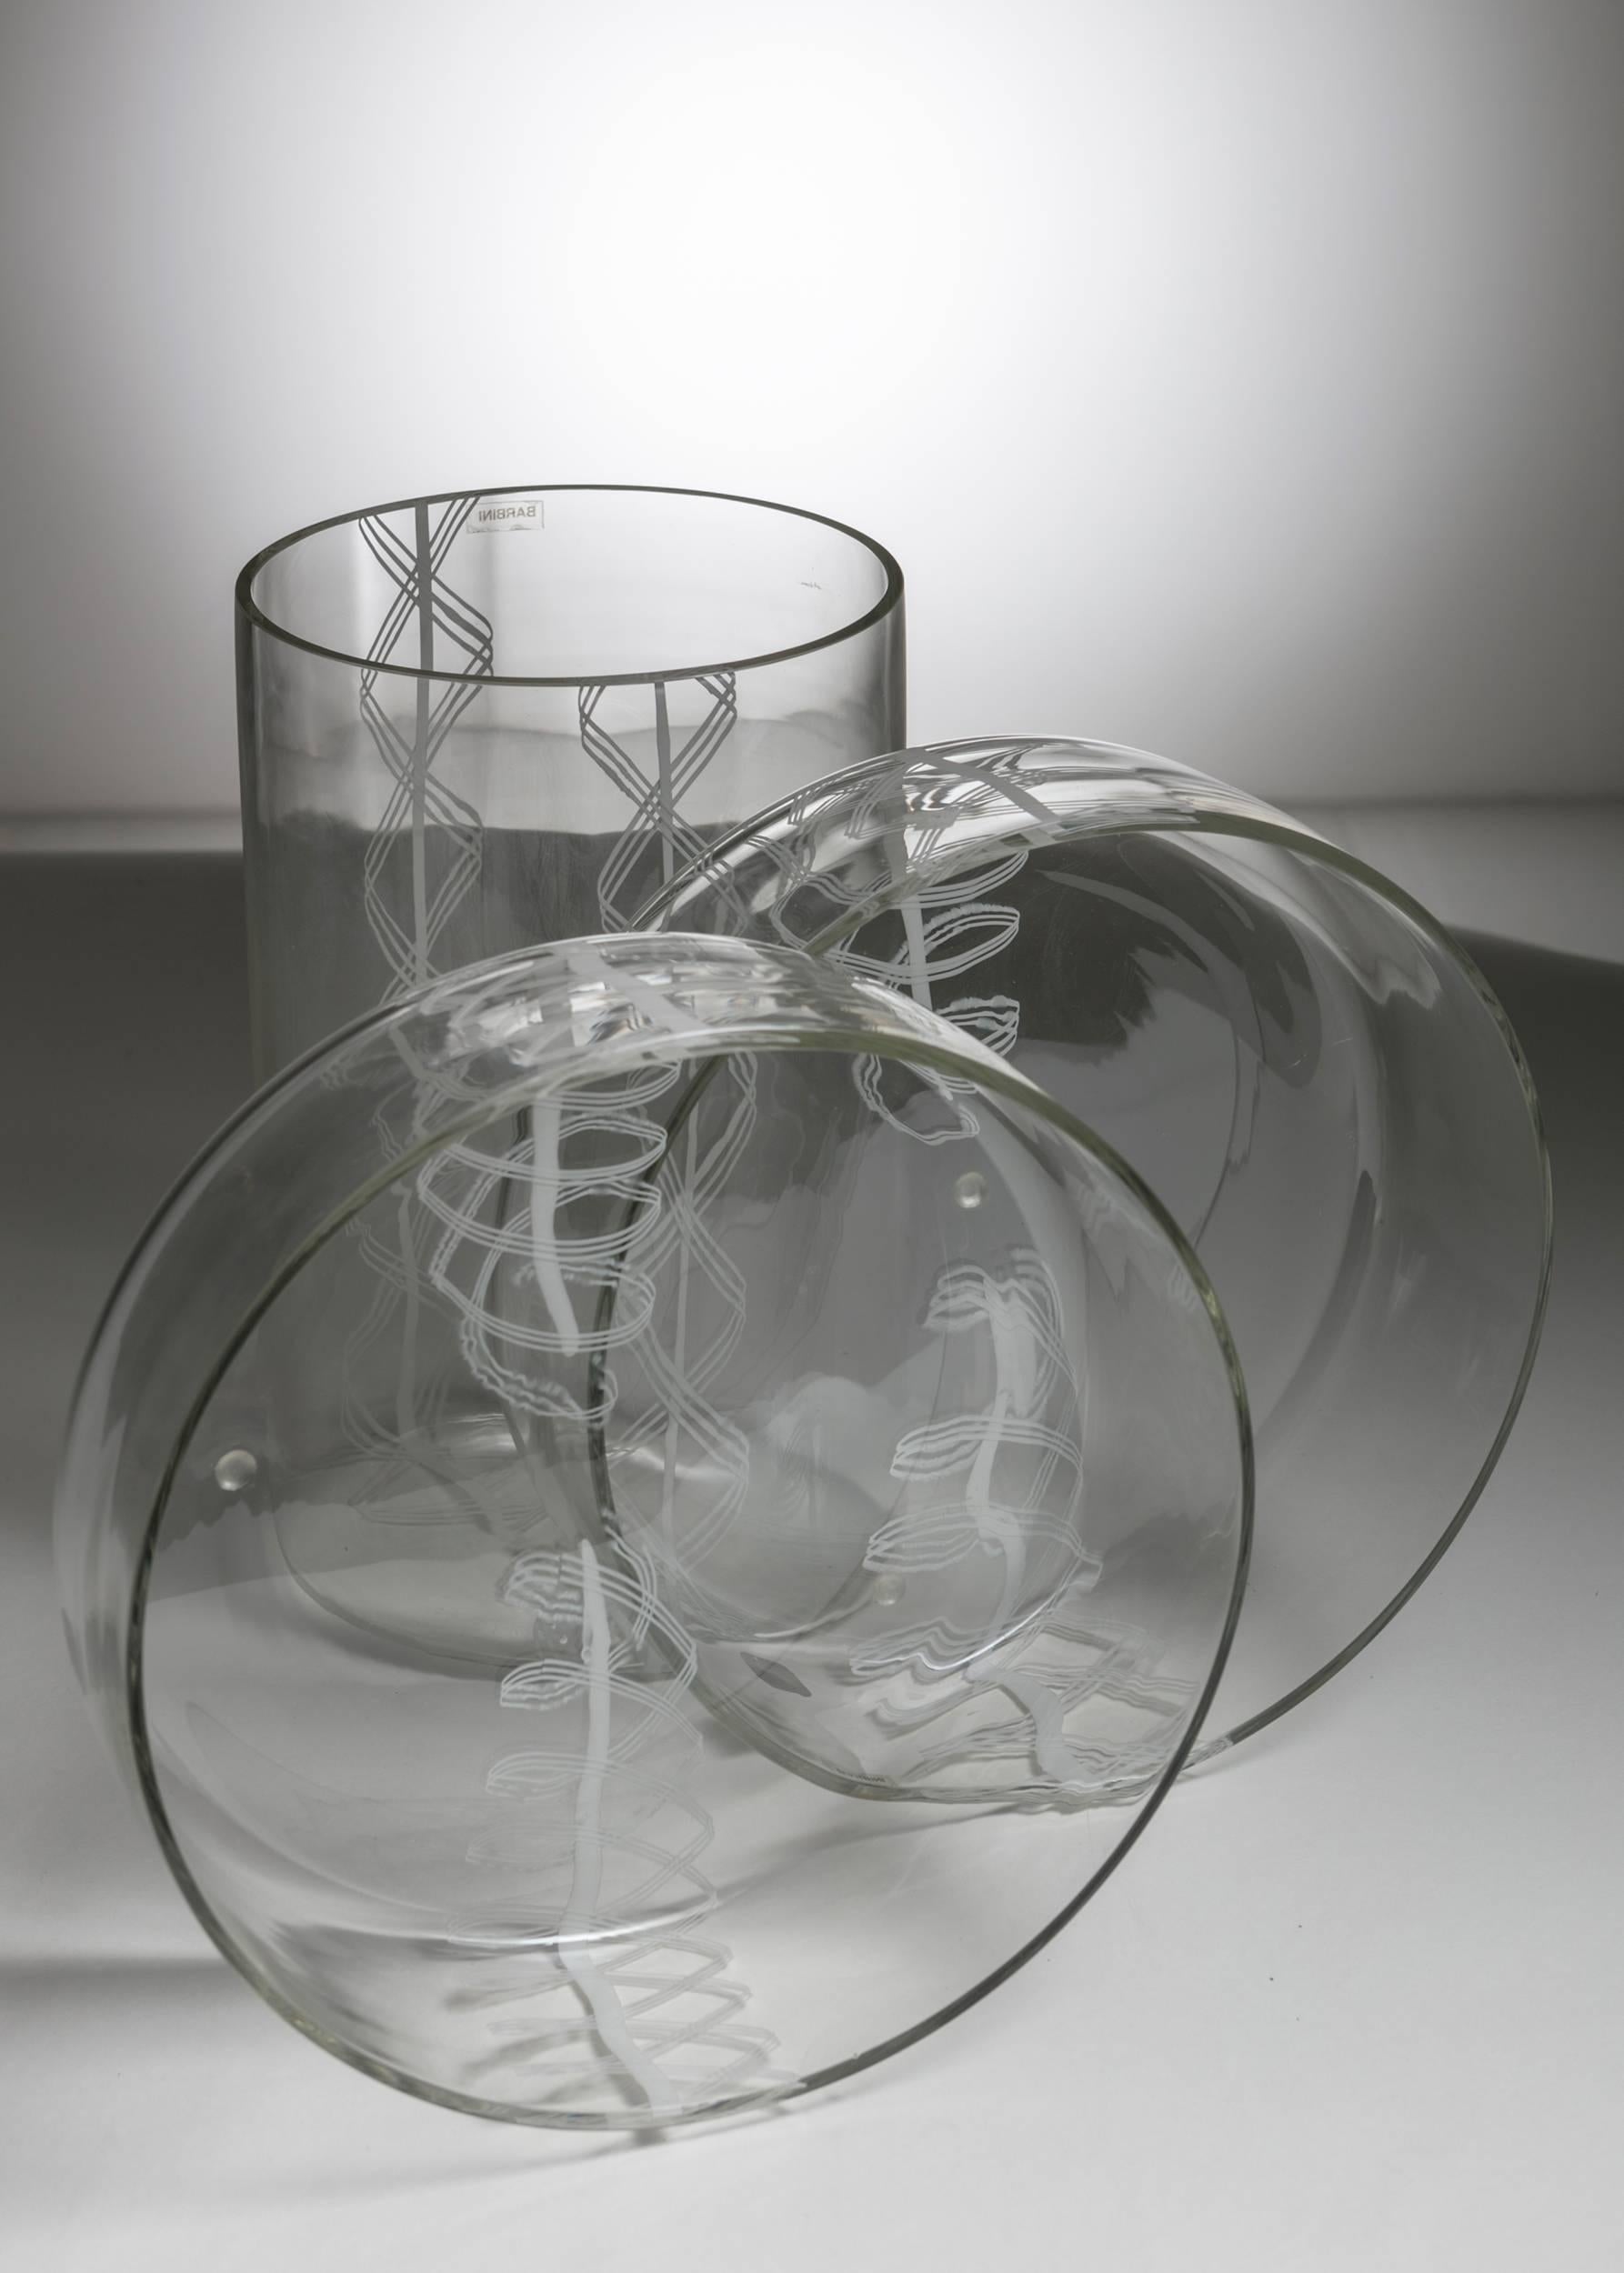 Satz von drei Vasen aus Murano-Glas von Barbini.
Mundgeblasenes Glas mit edlem weißen Filigrana-Dekor.
Größe der niedrigen Stücke.